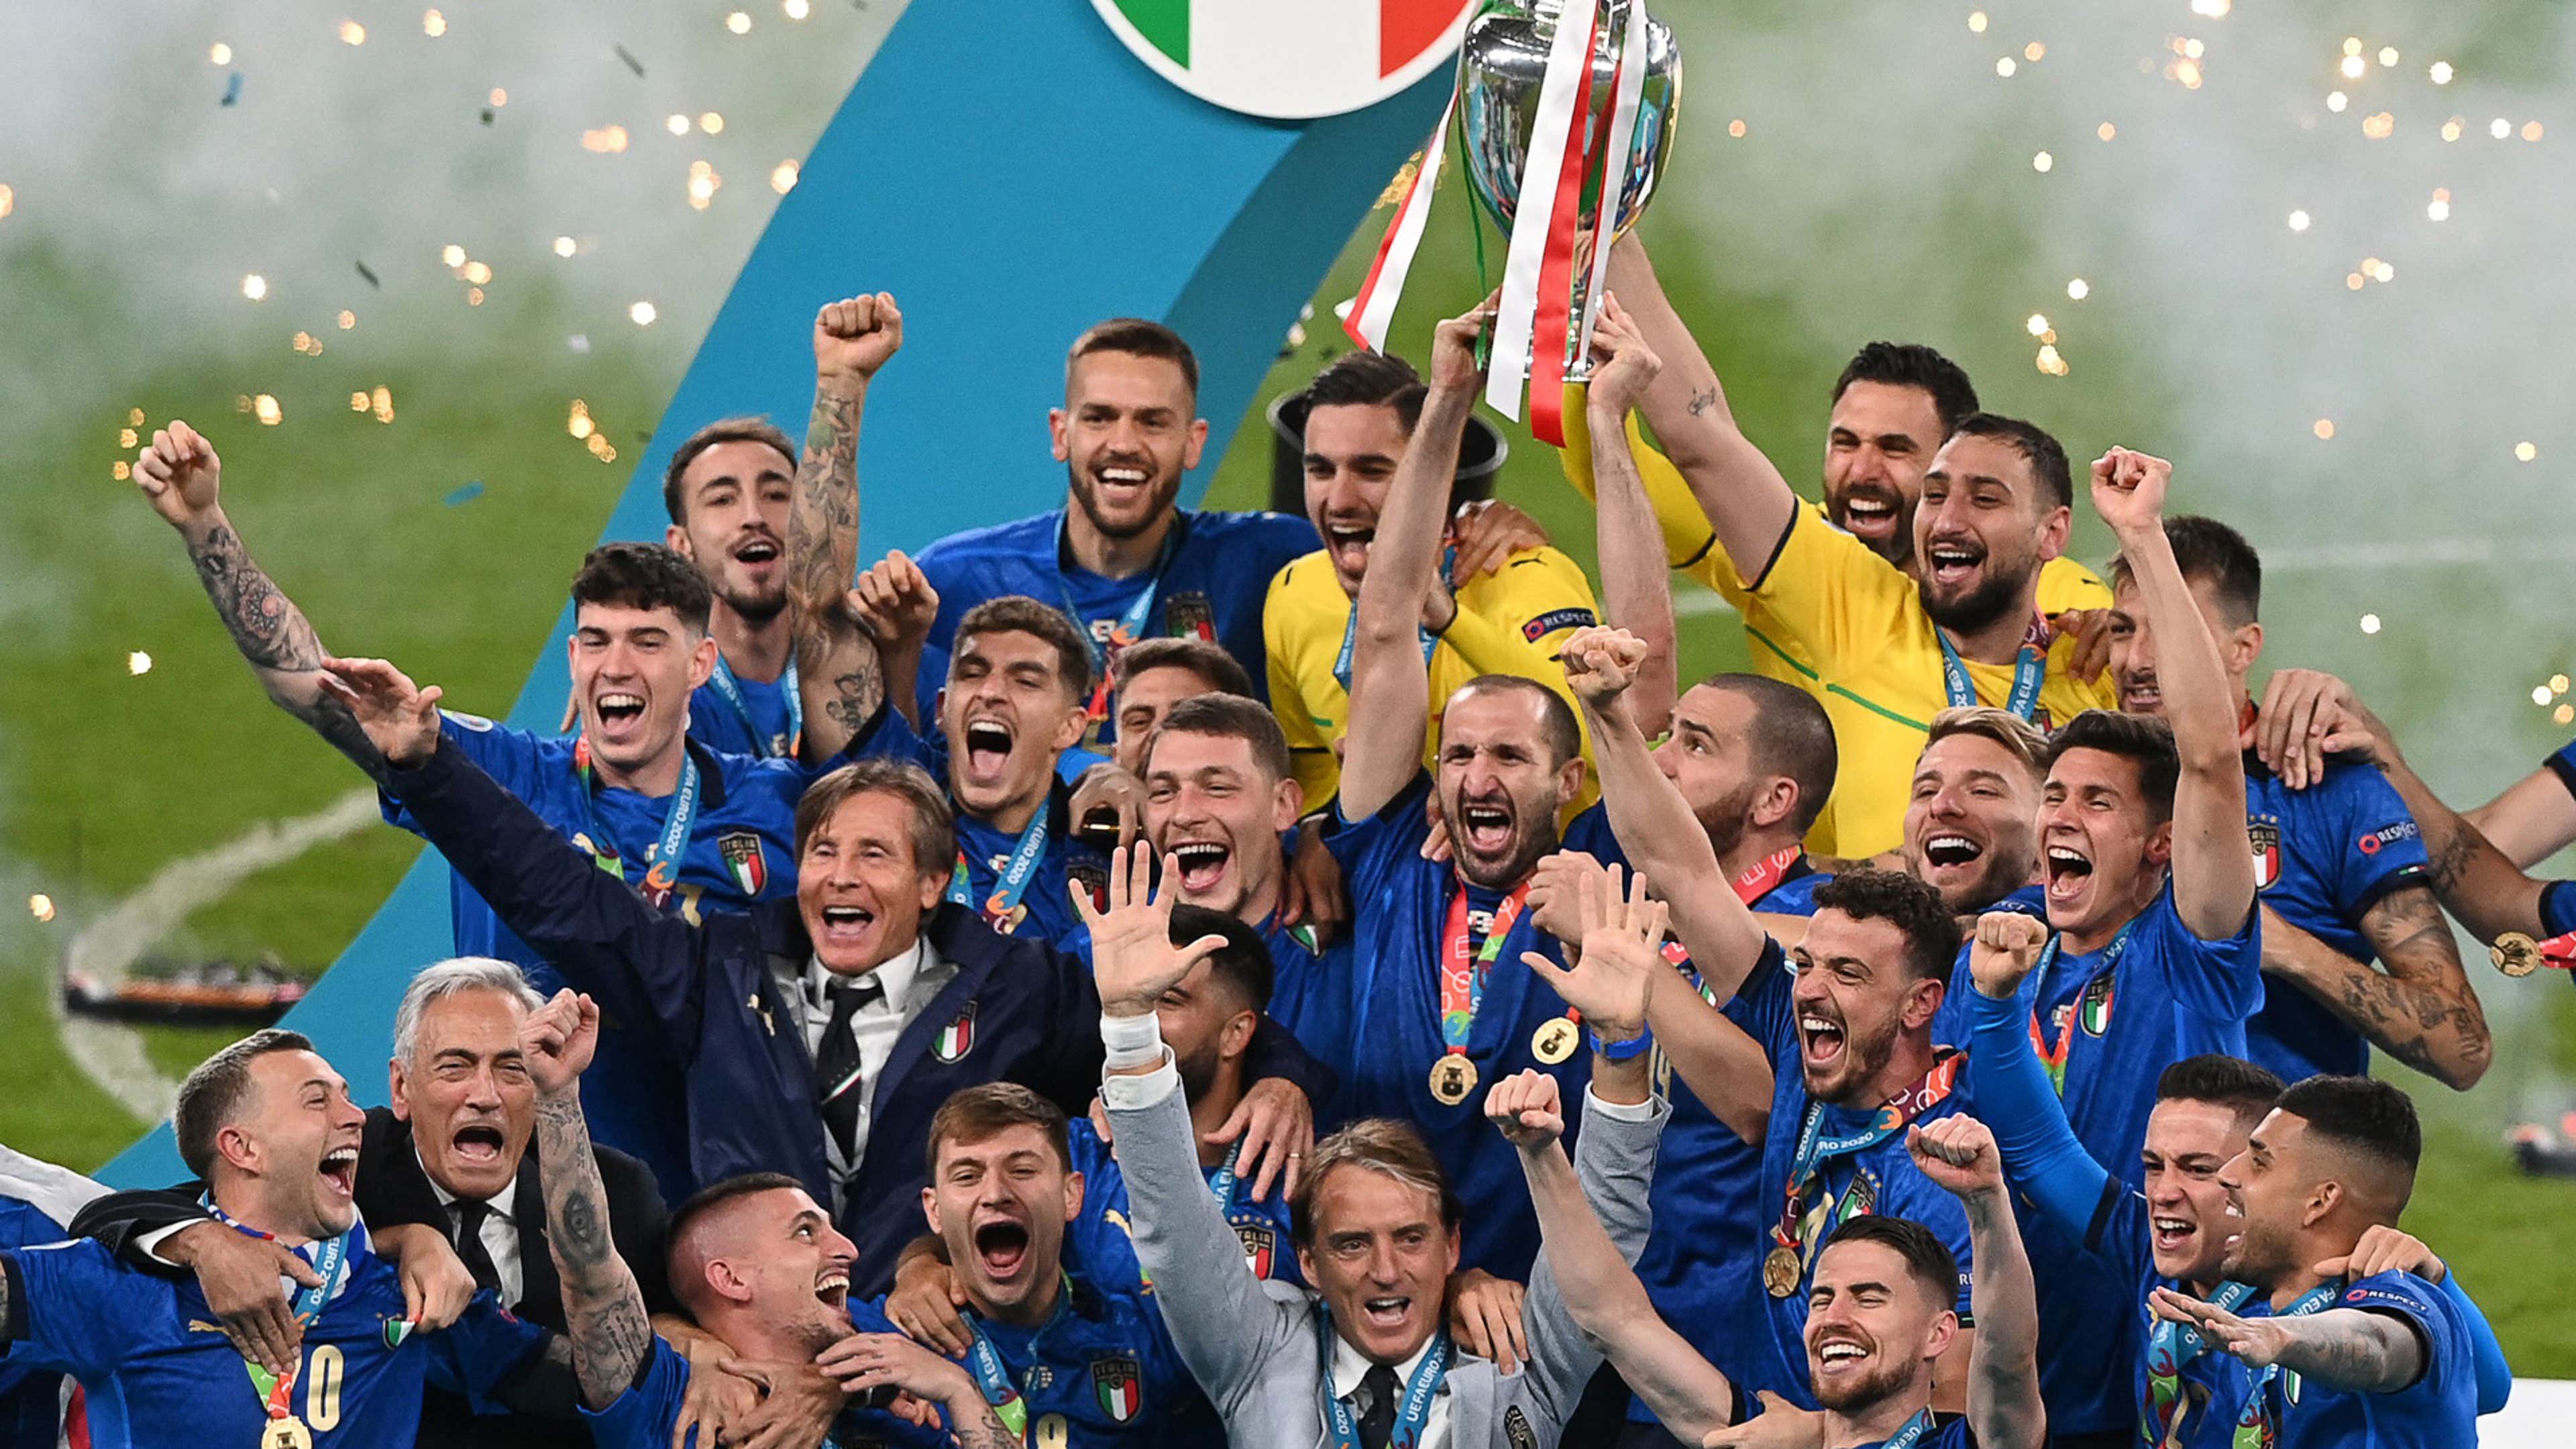 Eurocopa: quem é o maior campeão e qual a lista de todos os vencedores do  torneio?